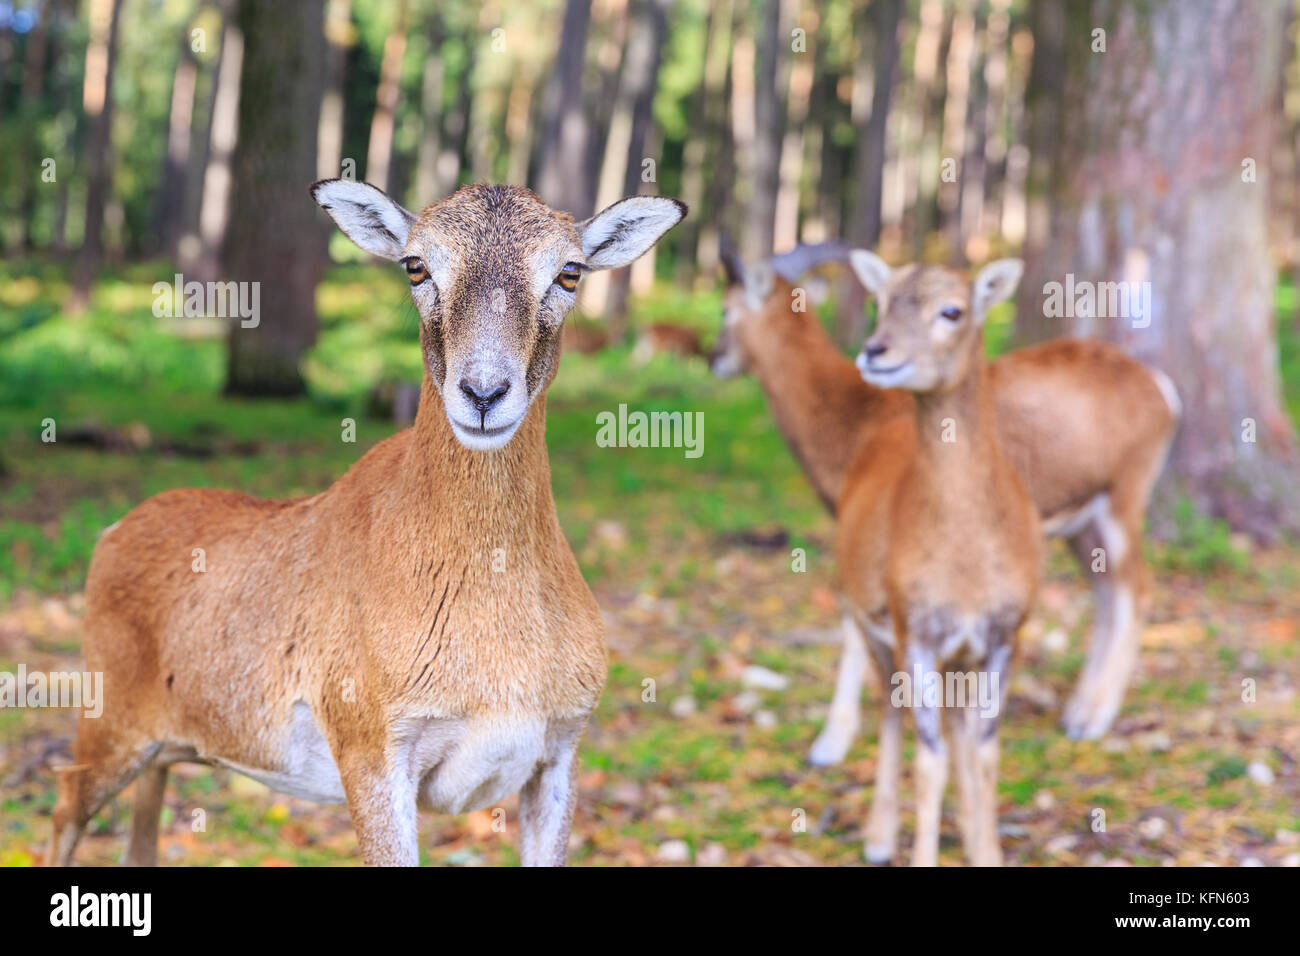 Ecouvres de mouflon d'Europe (ovis orientalis musimon), femelles en groupe dans les bois, gros plan, Allemagne Banque D'Images